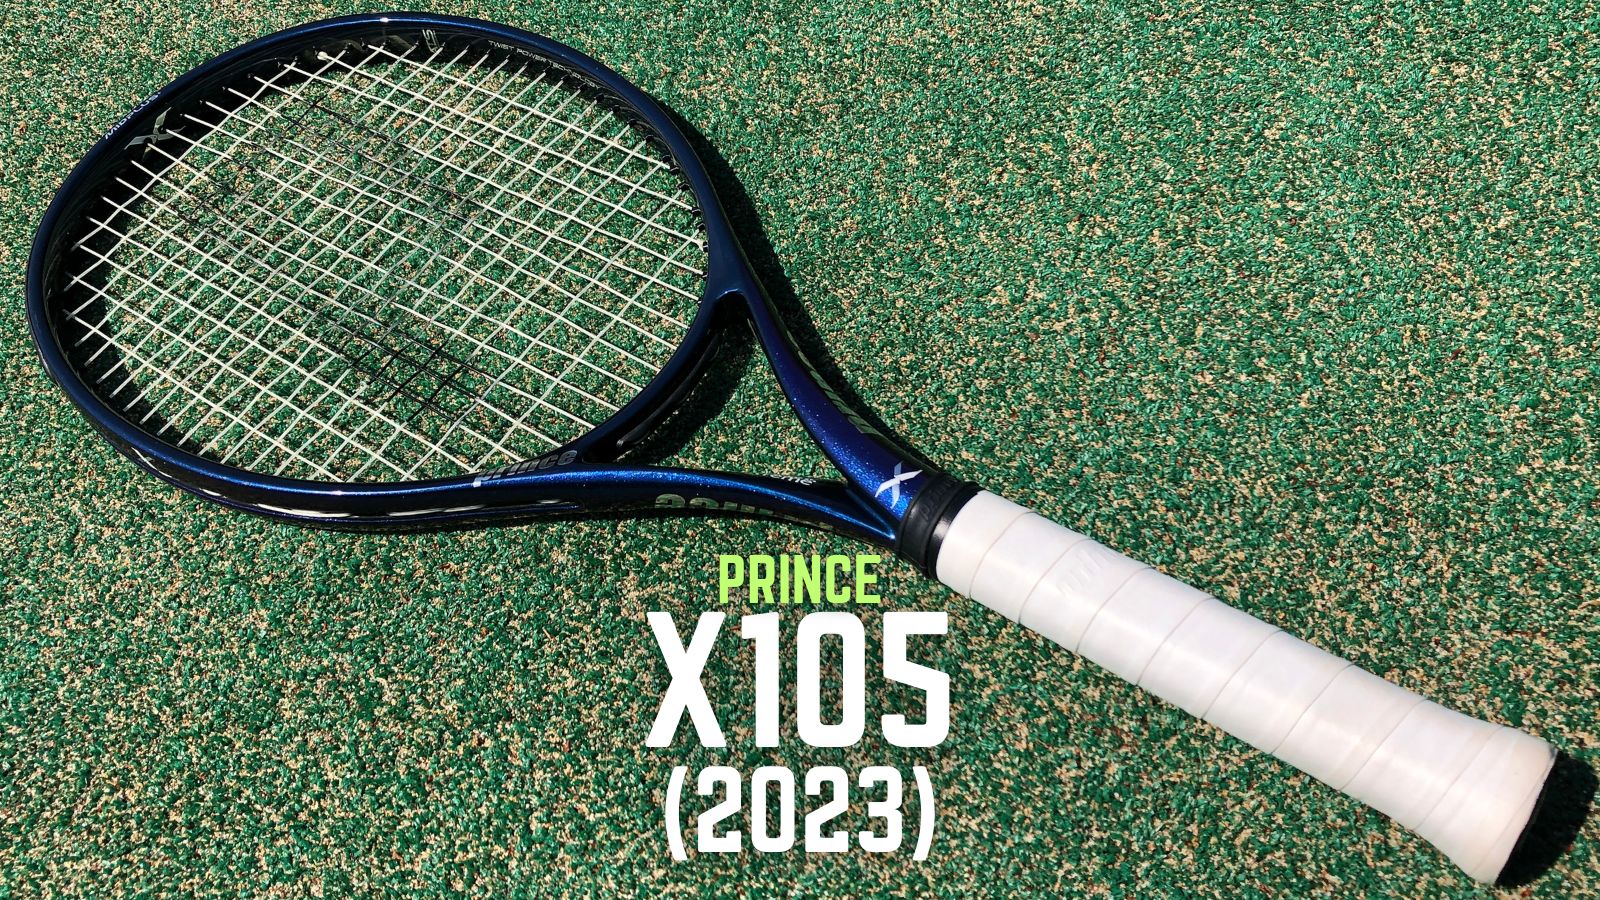 プリンスx105右利き用グリップ3 - テニス